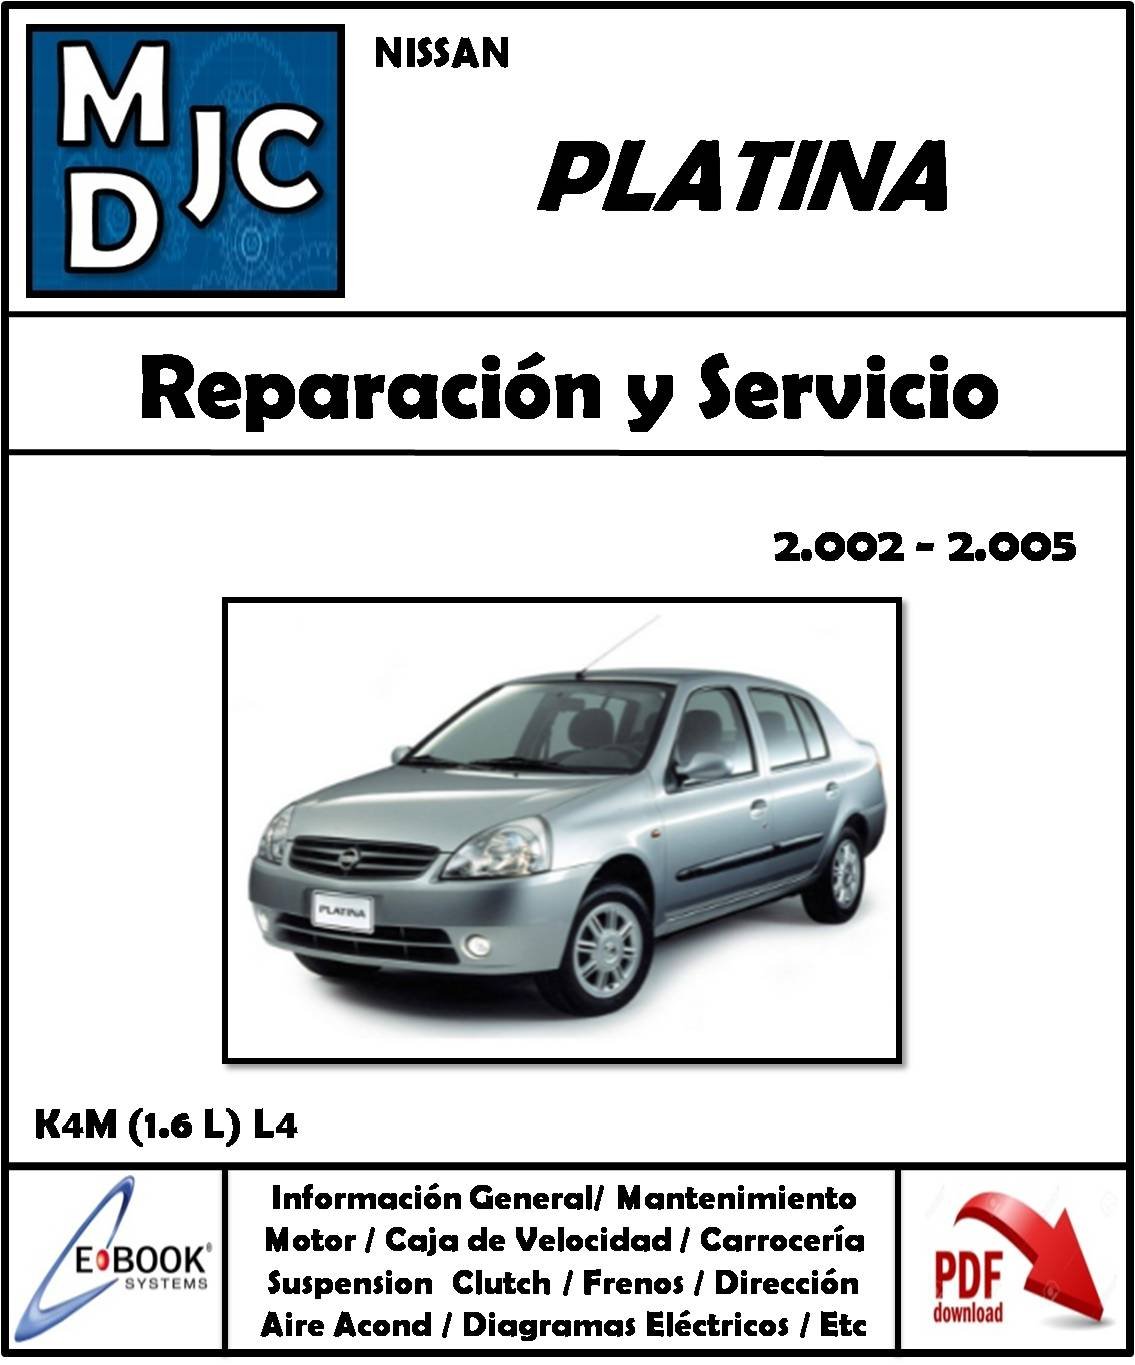 Nissan Platina 2002 - 2005